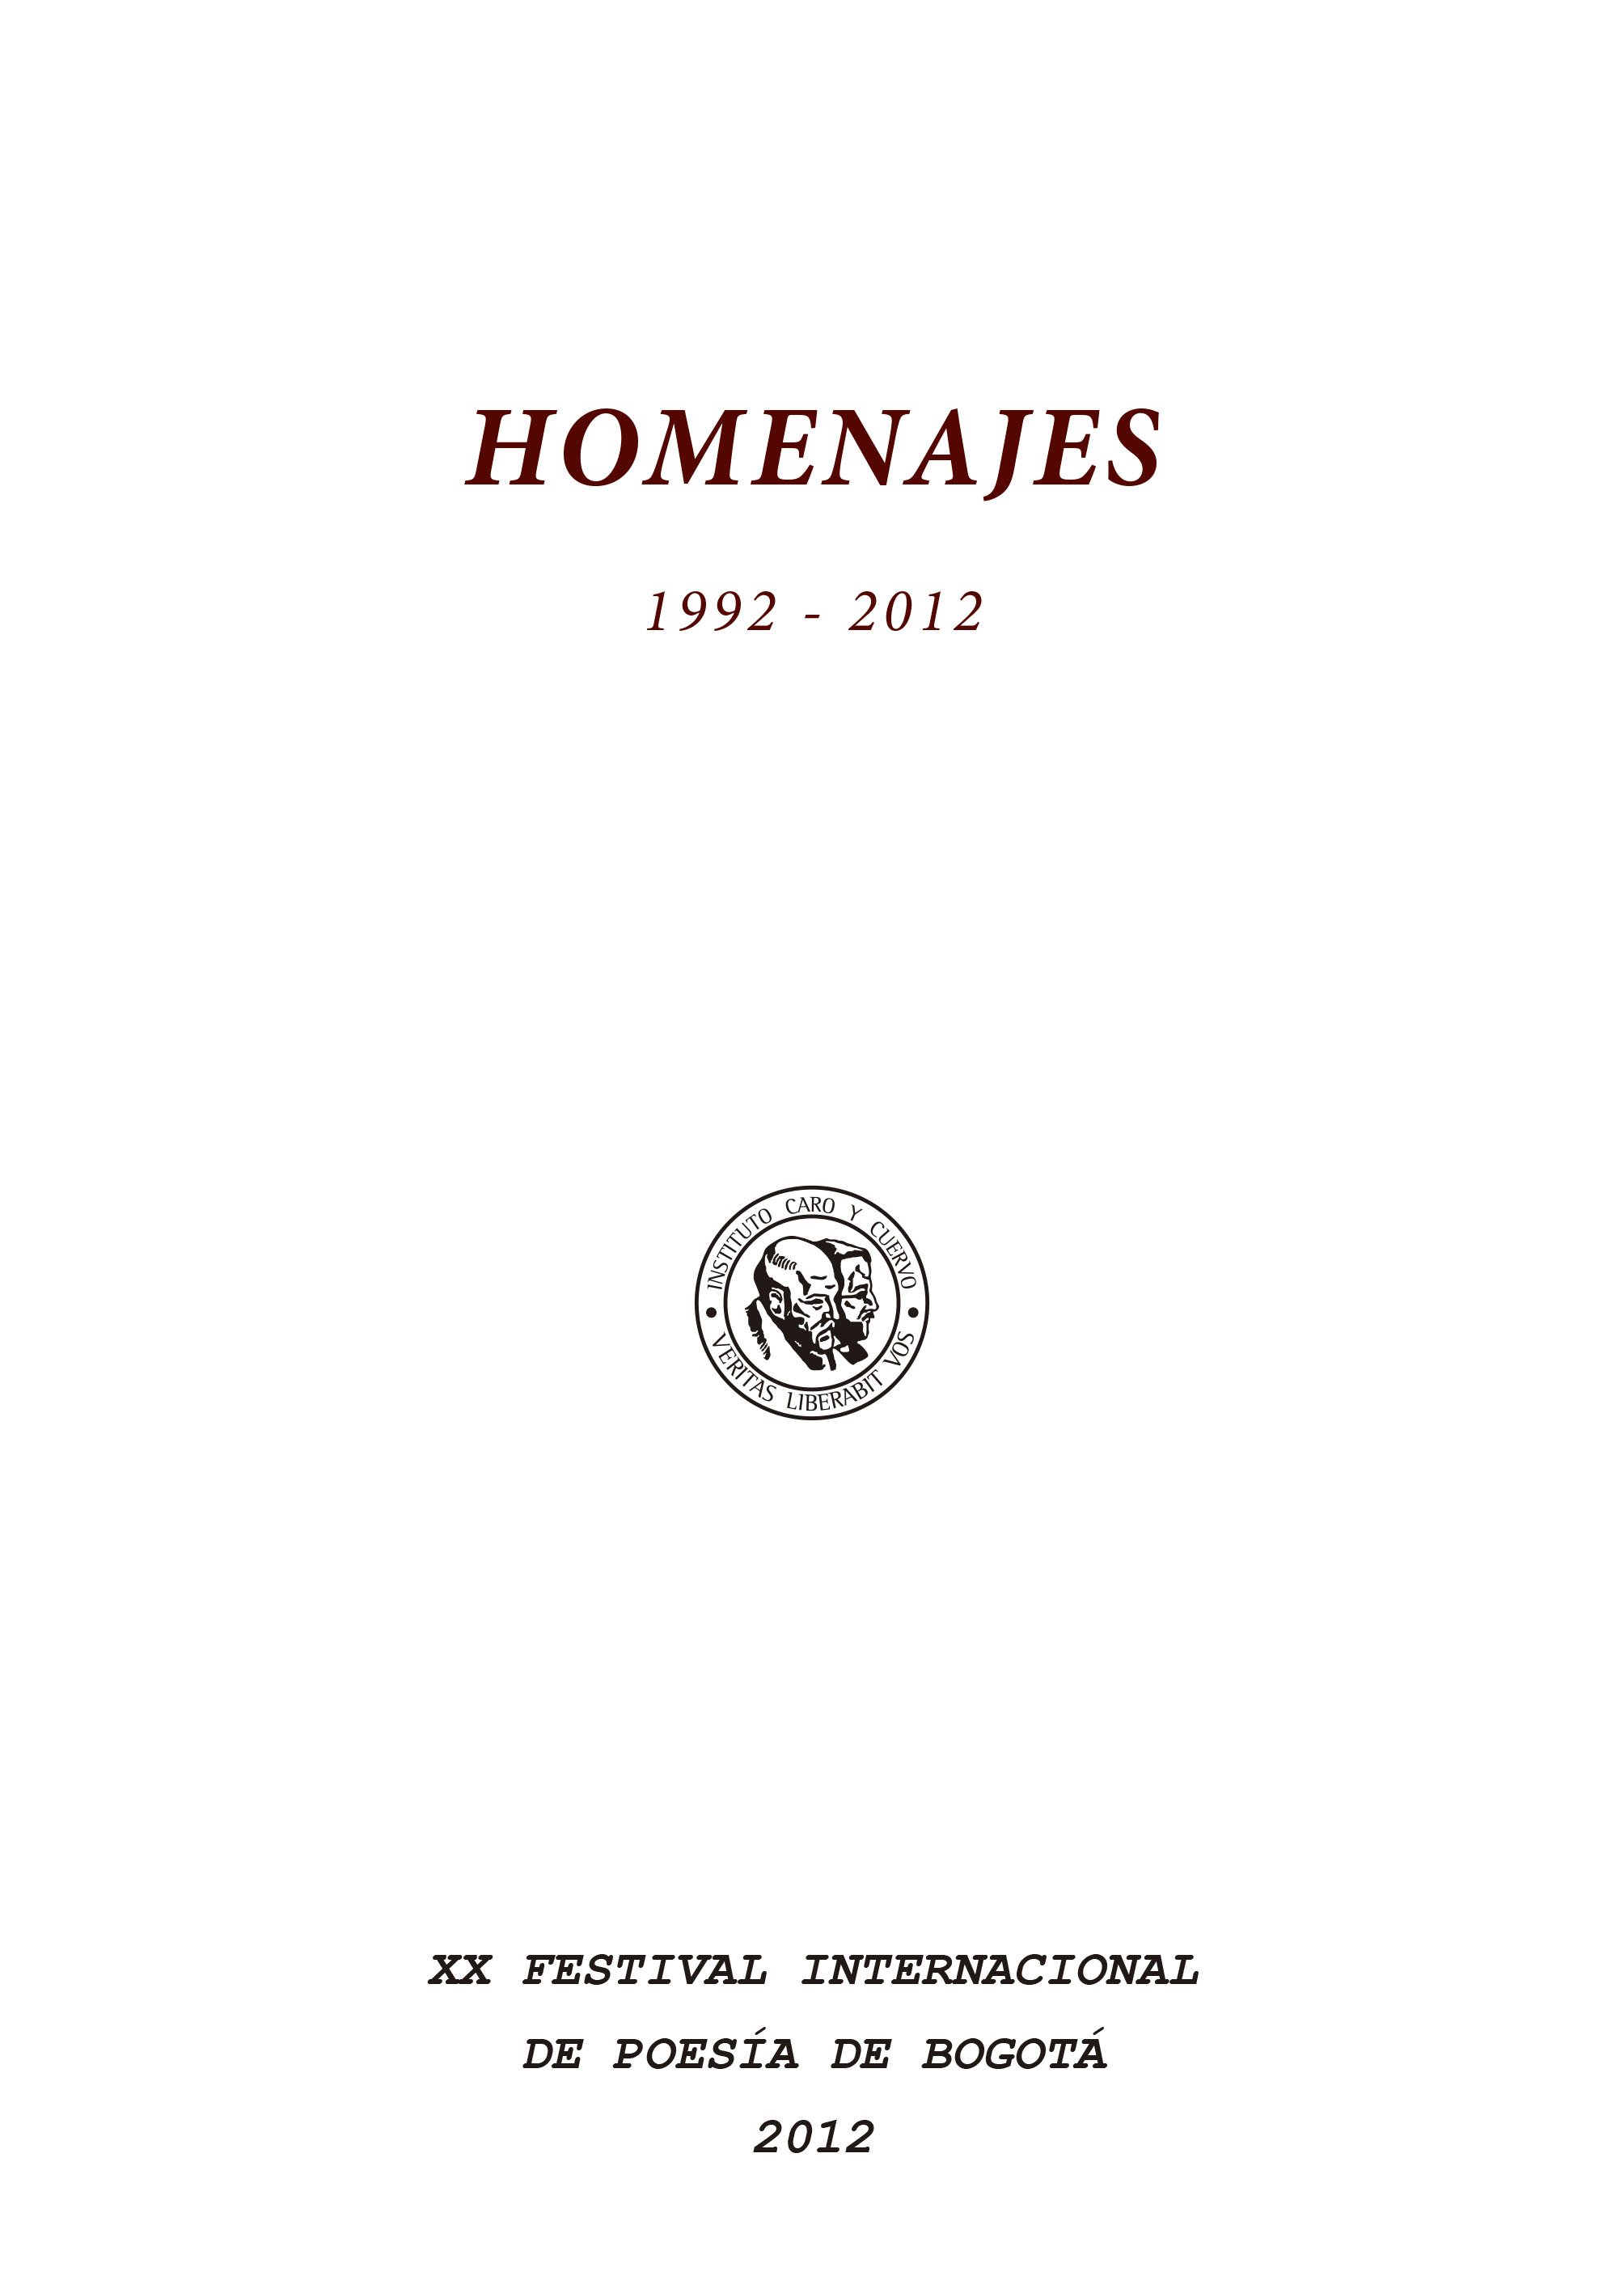 Homenajes 1992-2012